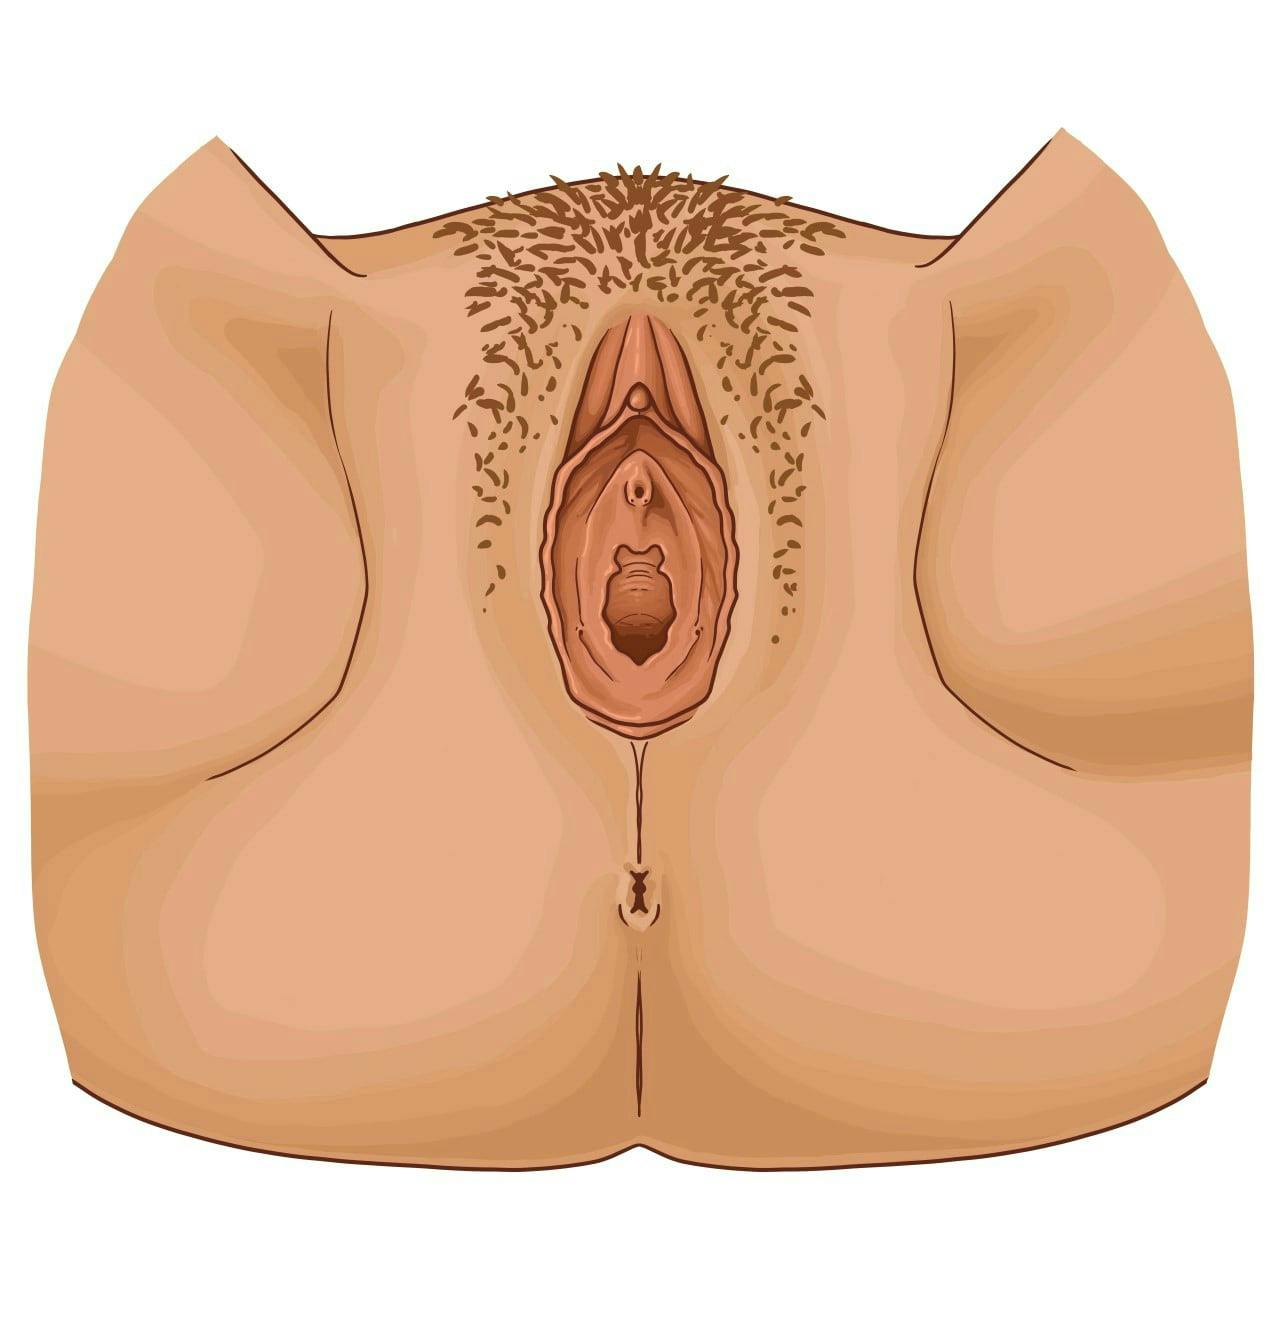 pictures of female urethra